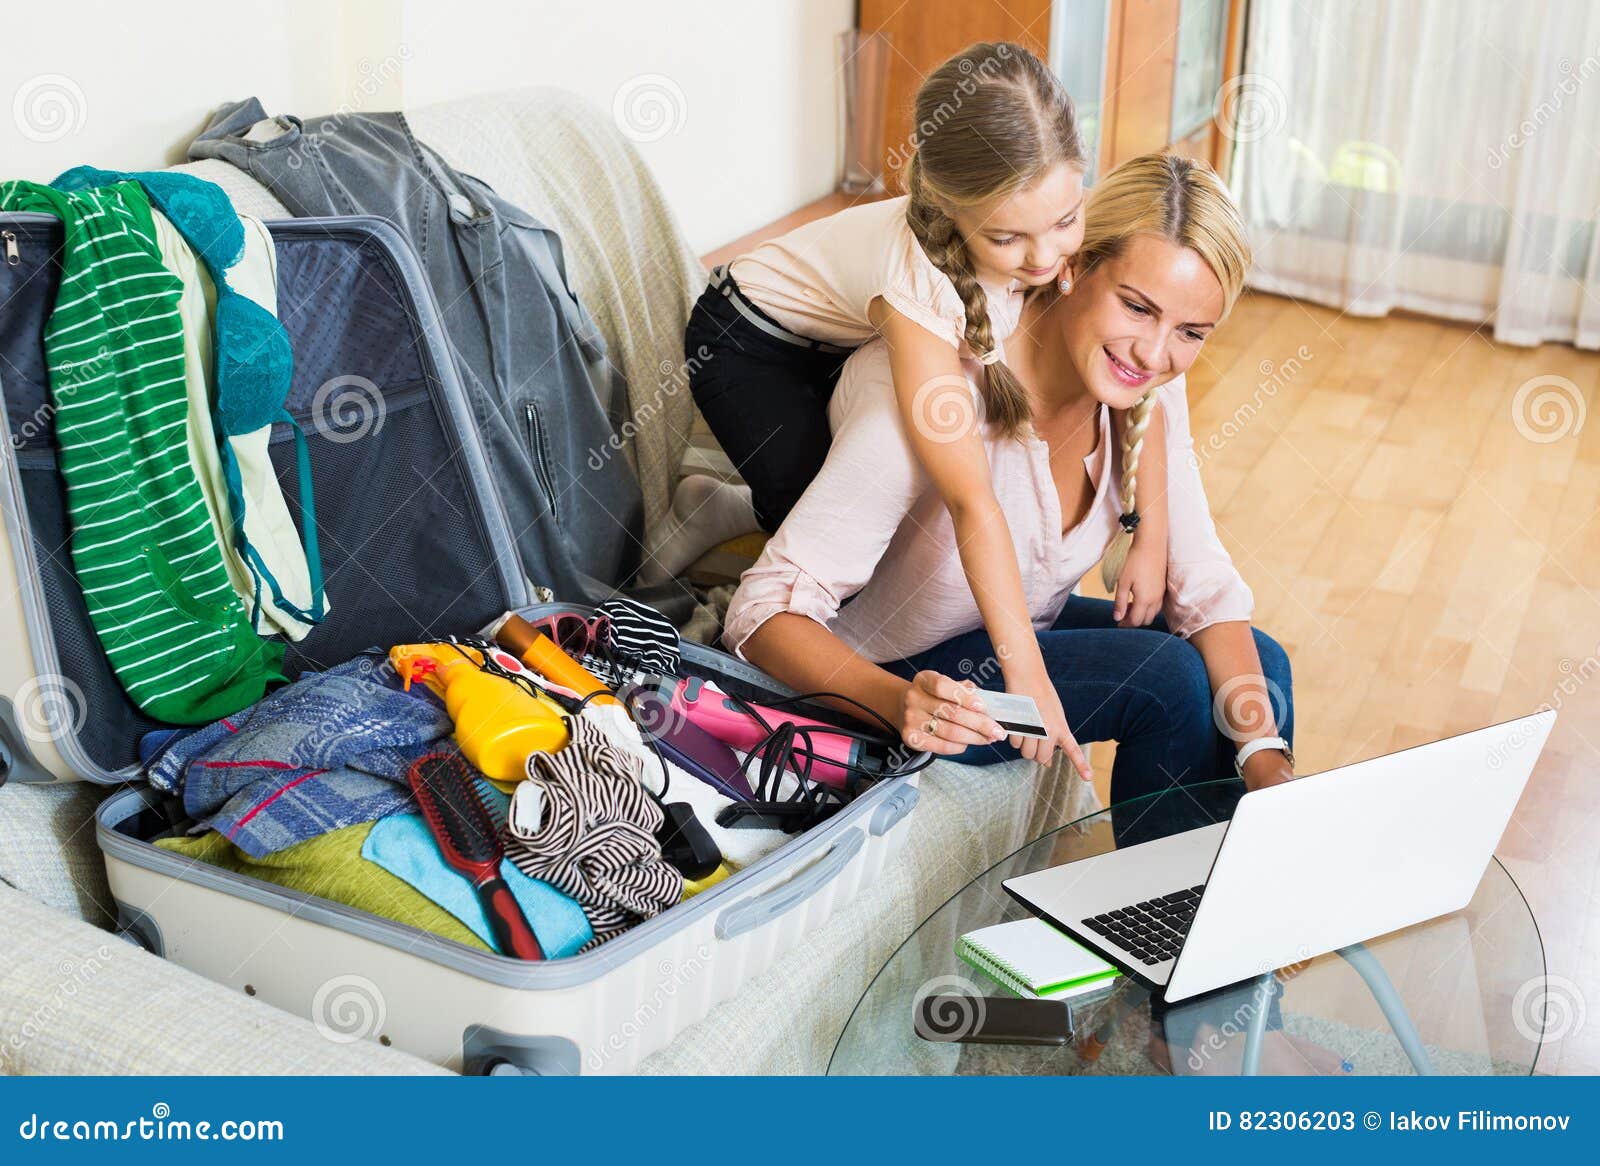 Мать всех вещей. Мама собирает чемодан. Мама с чемоданом и ребенком. Мама и дочка с чемоданами. Мама и ребенок собирают чемодан.